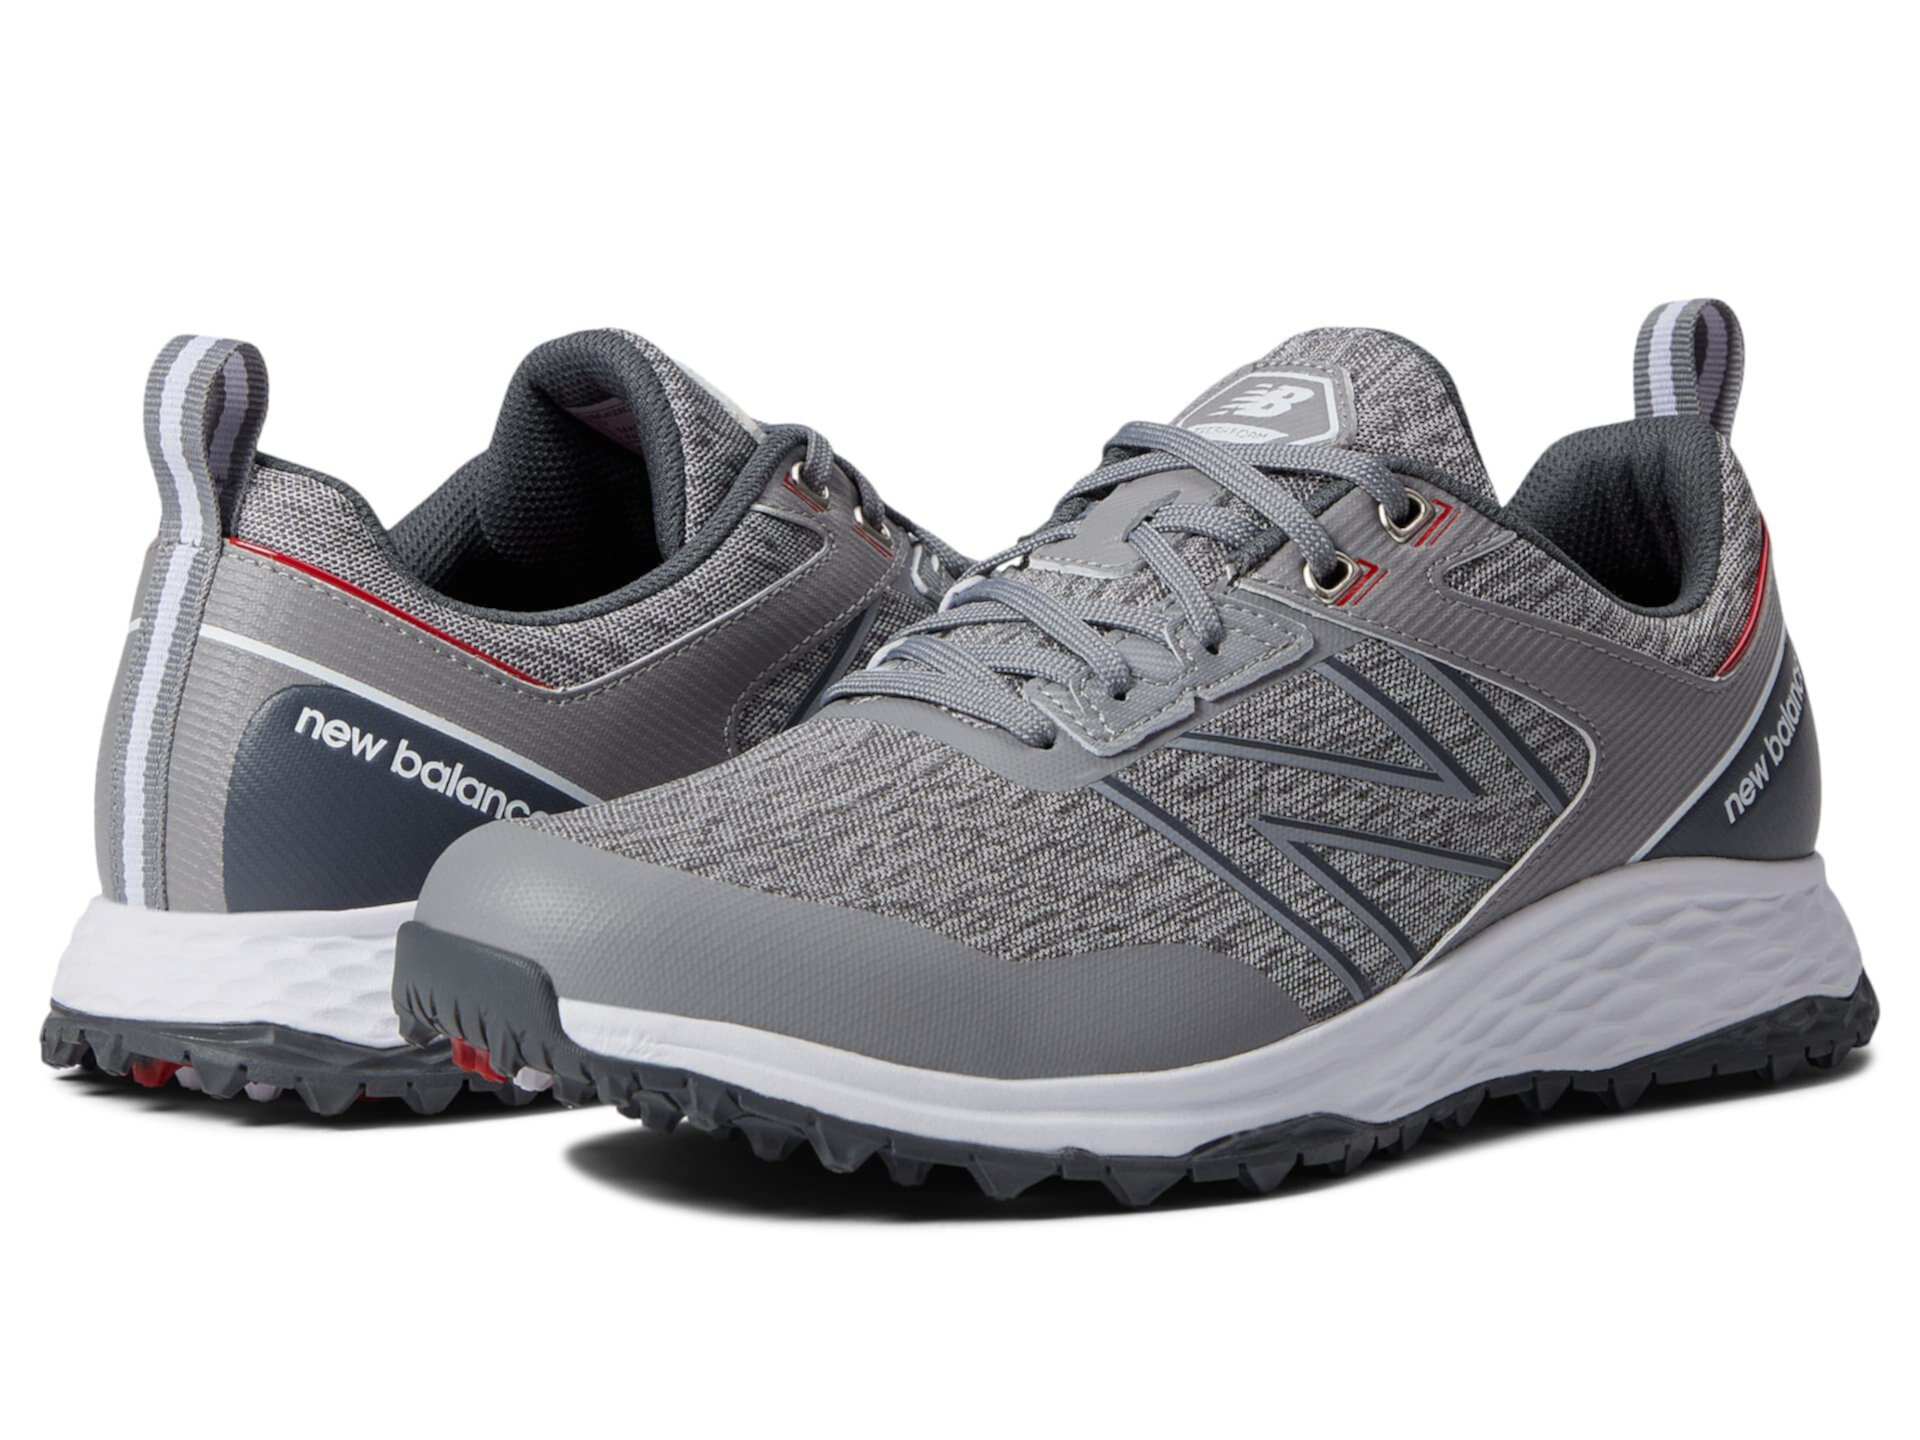 Ботинки для гольфа New Balance Fresh Foam Contend для мужчин, из категории спортивной обуви. New Balance